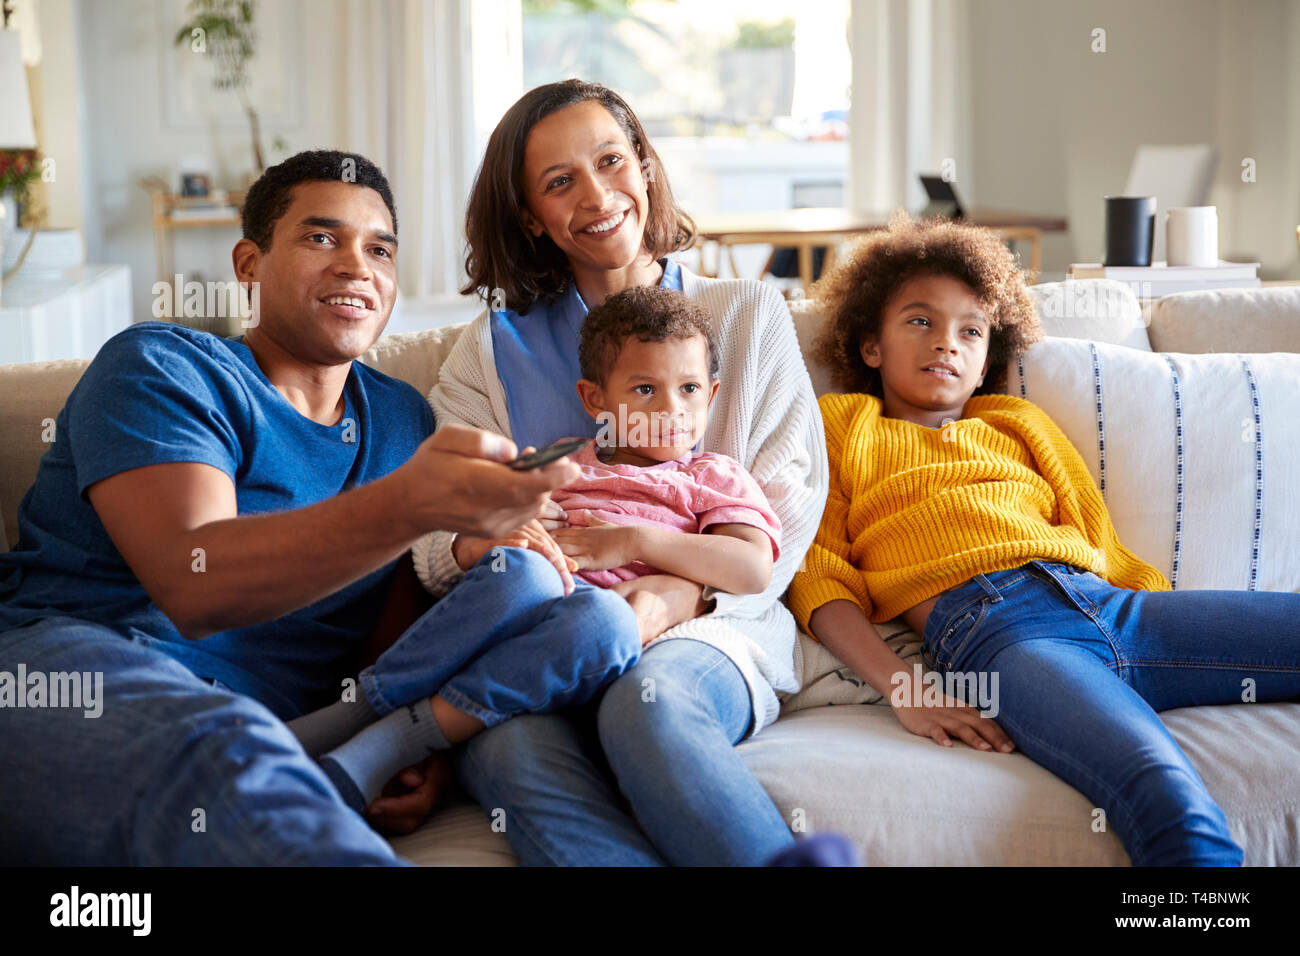 Vorderansicht des jungen Familie sitzen zusammen auf dem Sofa im Wohnzimmer fernsehen, Nahaufnahme, Ansicht von vorne Stockfoto